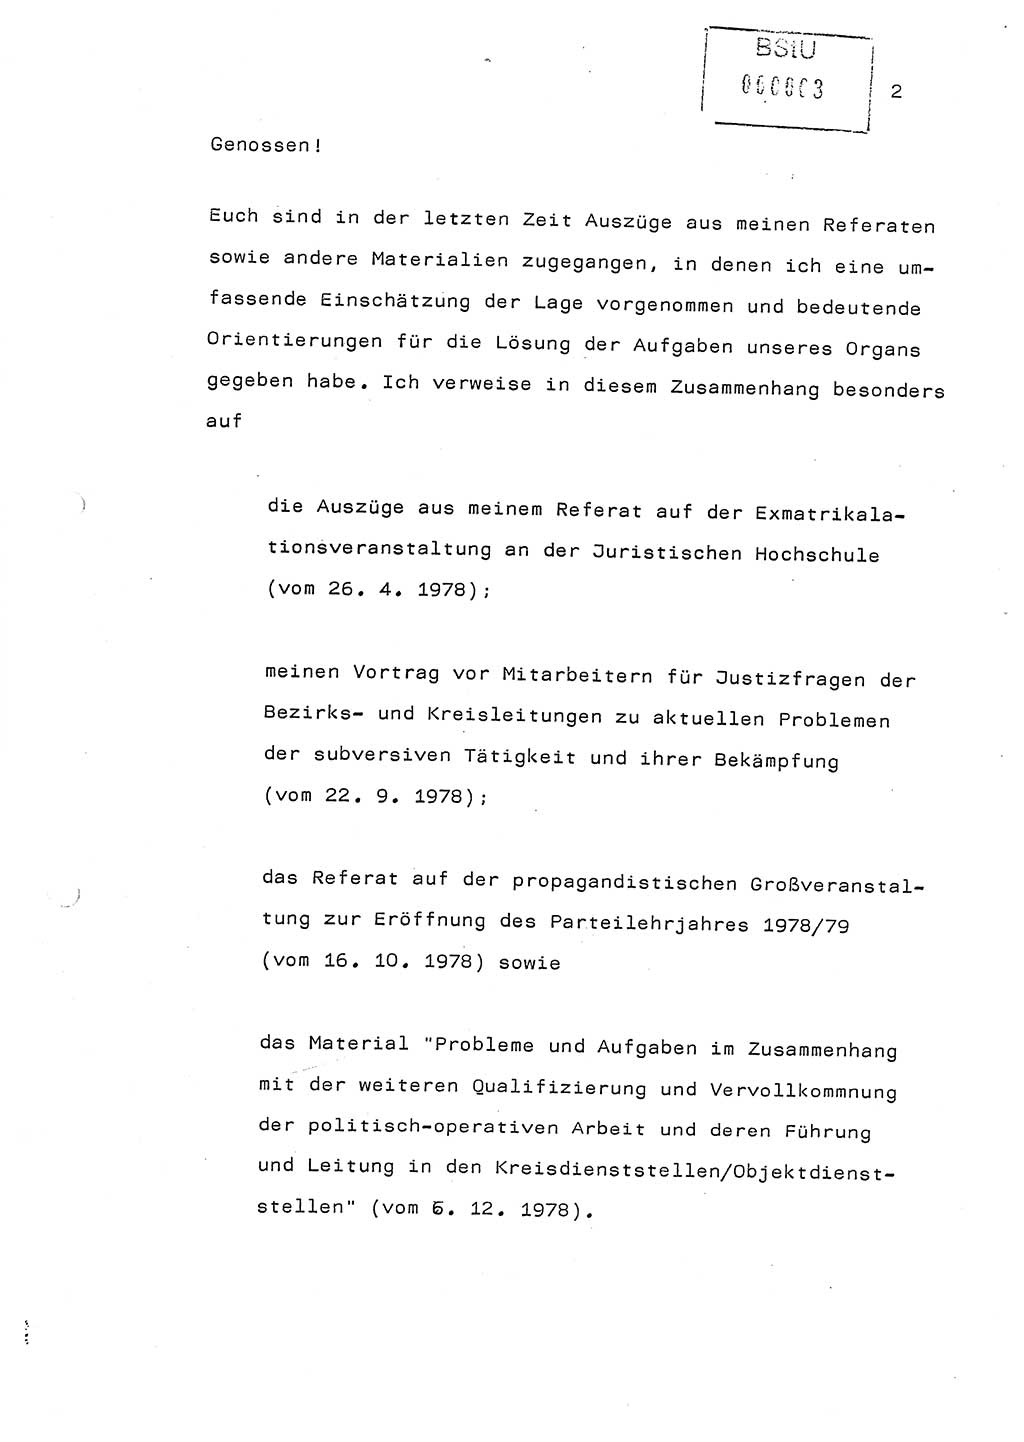 Referat (Generaloberst Erich Mielke) auf der Zentralen Dienstkonferenz am 24.5.1979 [Ministerium für Staatssicherheit (MfS), Deutsche Demokratische Republik (DDR), Der Minister], Berlin 1979, Seite 2 (Ref. DK DDR MfS Min. /79 1979, S. 2)